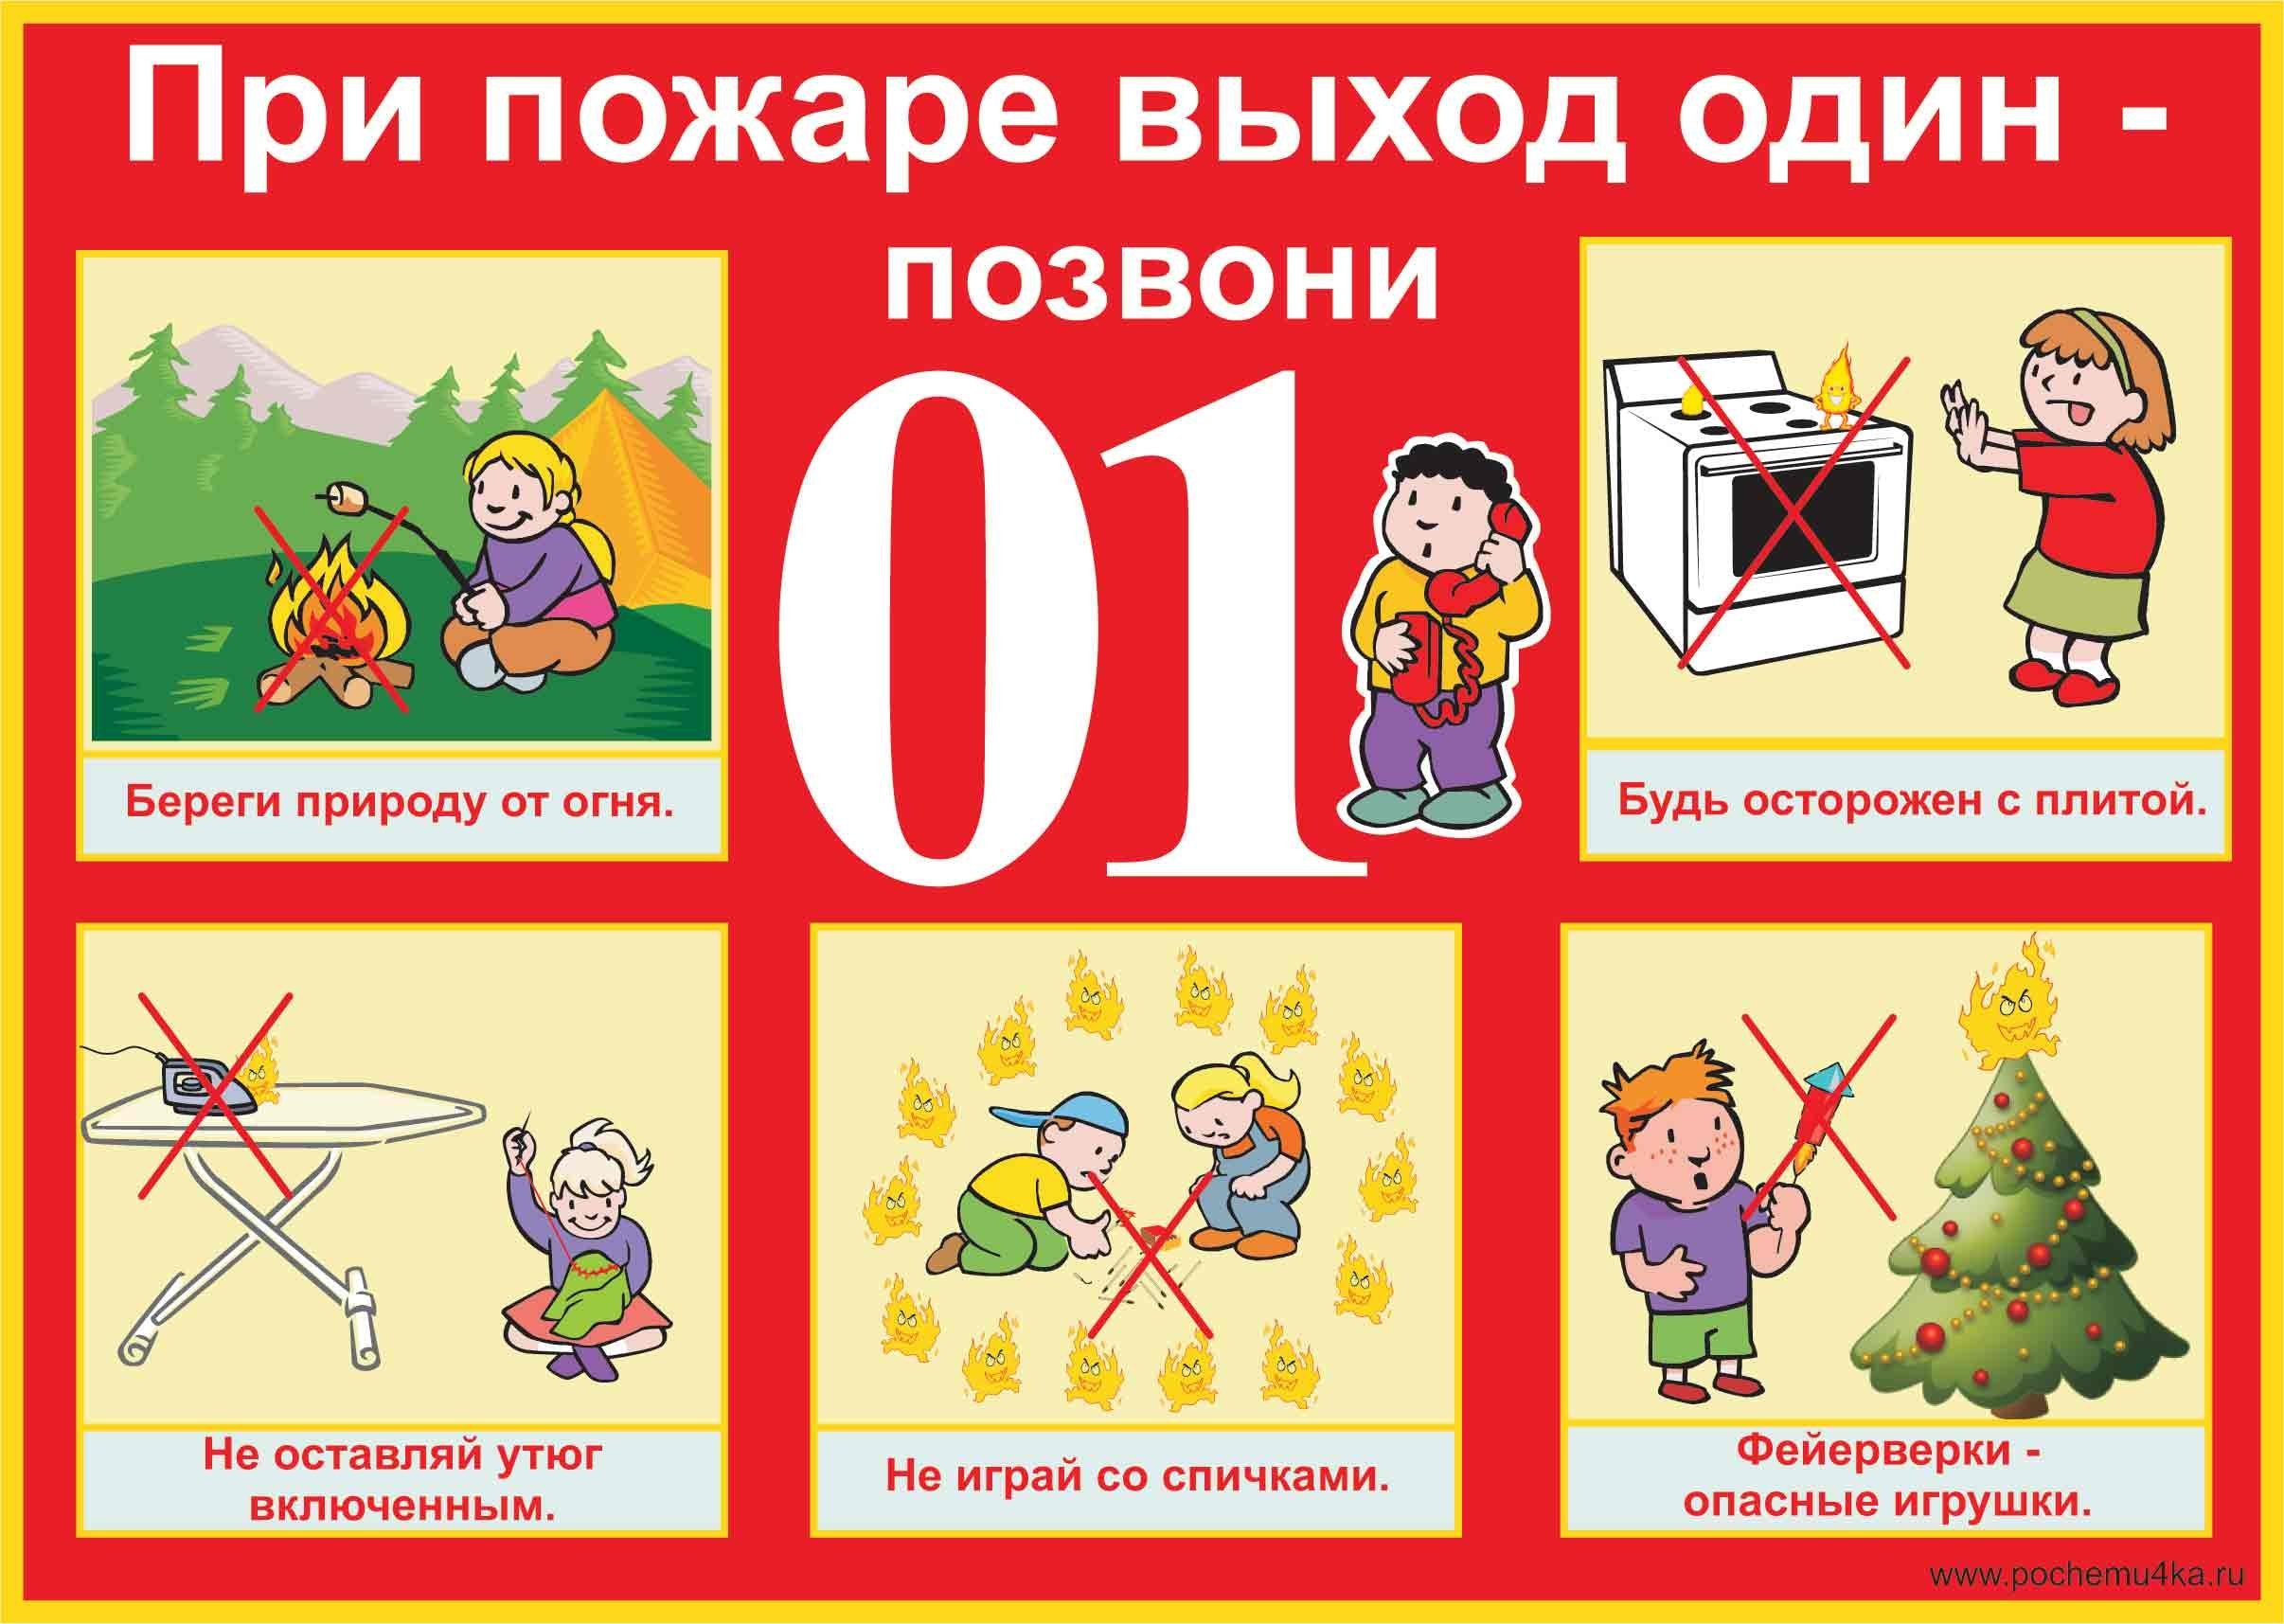 Тема недели пожарная безопасность. Пожарная безопасность для детей. Правила пожарной безопасности для детей. Плакат пожарная безопасность для детей.